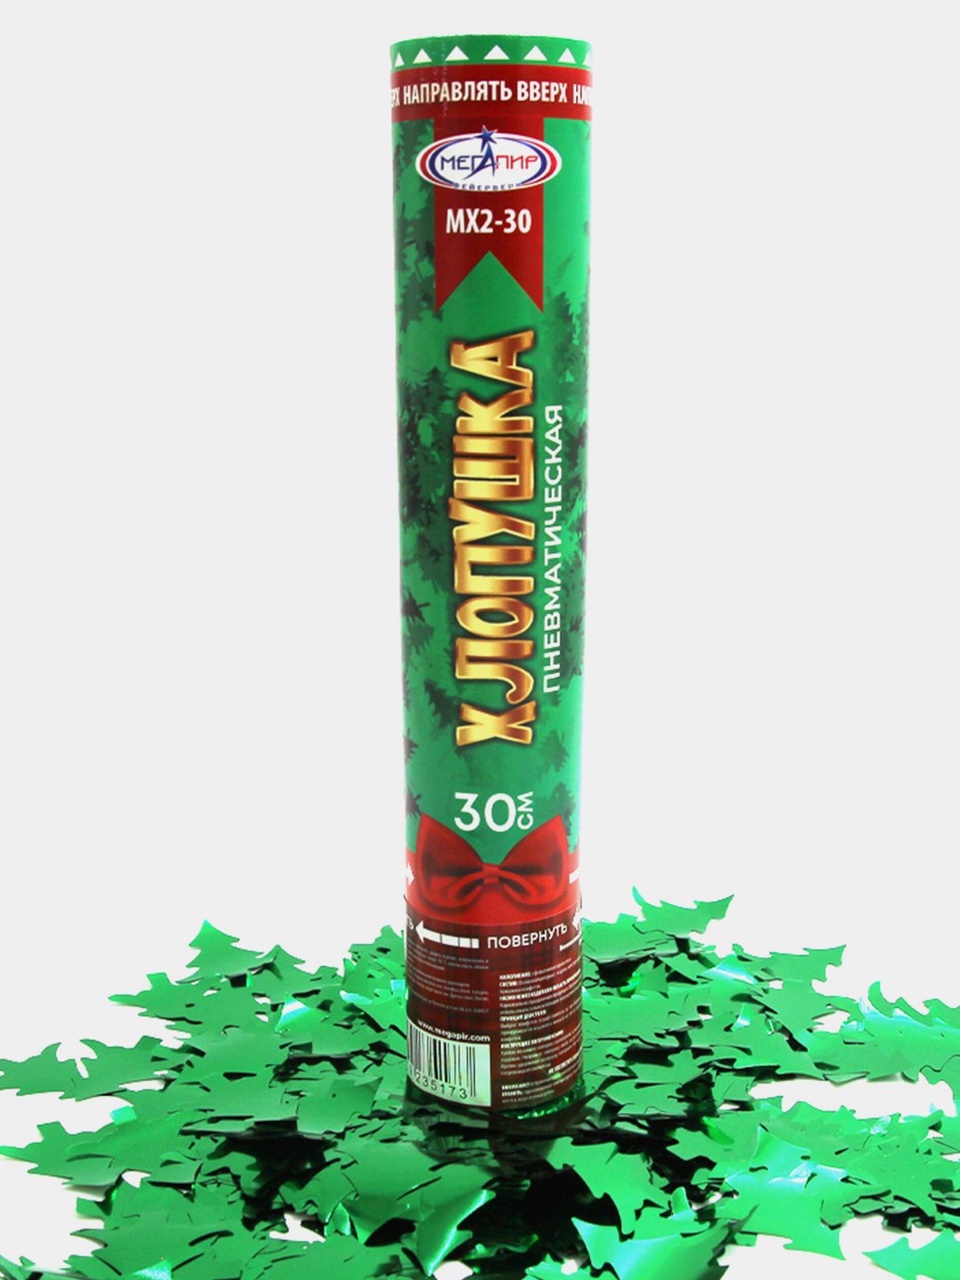 Пневматическая хлопушка 30 см наполнитель конфетти новогодняя ёлка МХ2-30 - 200 ₽, заказать онлайн.